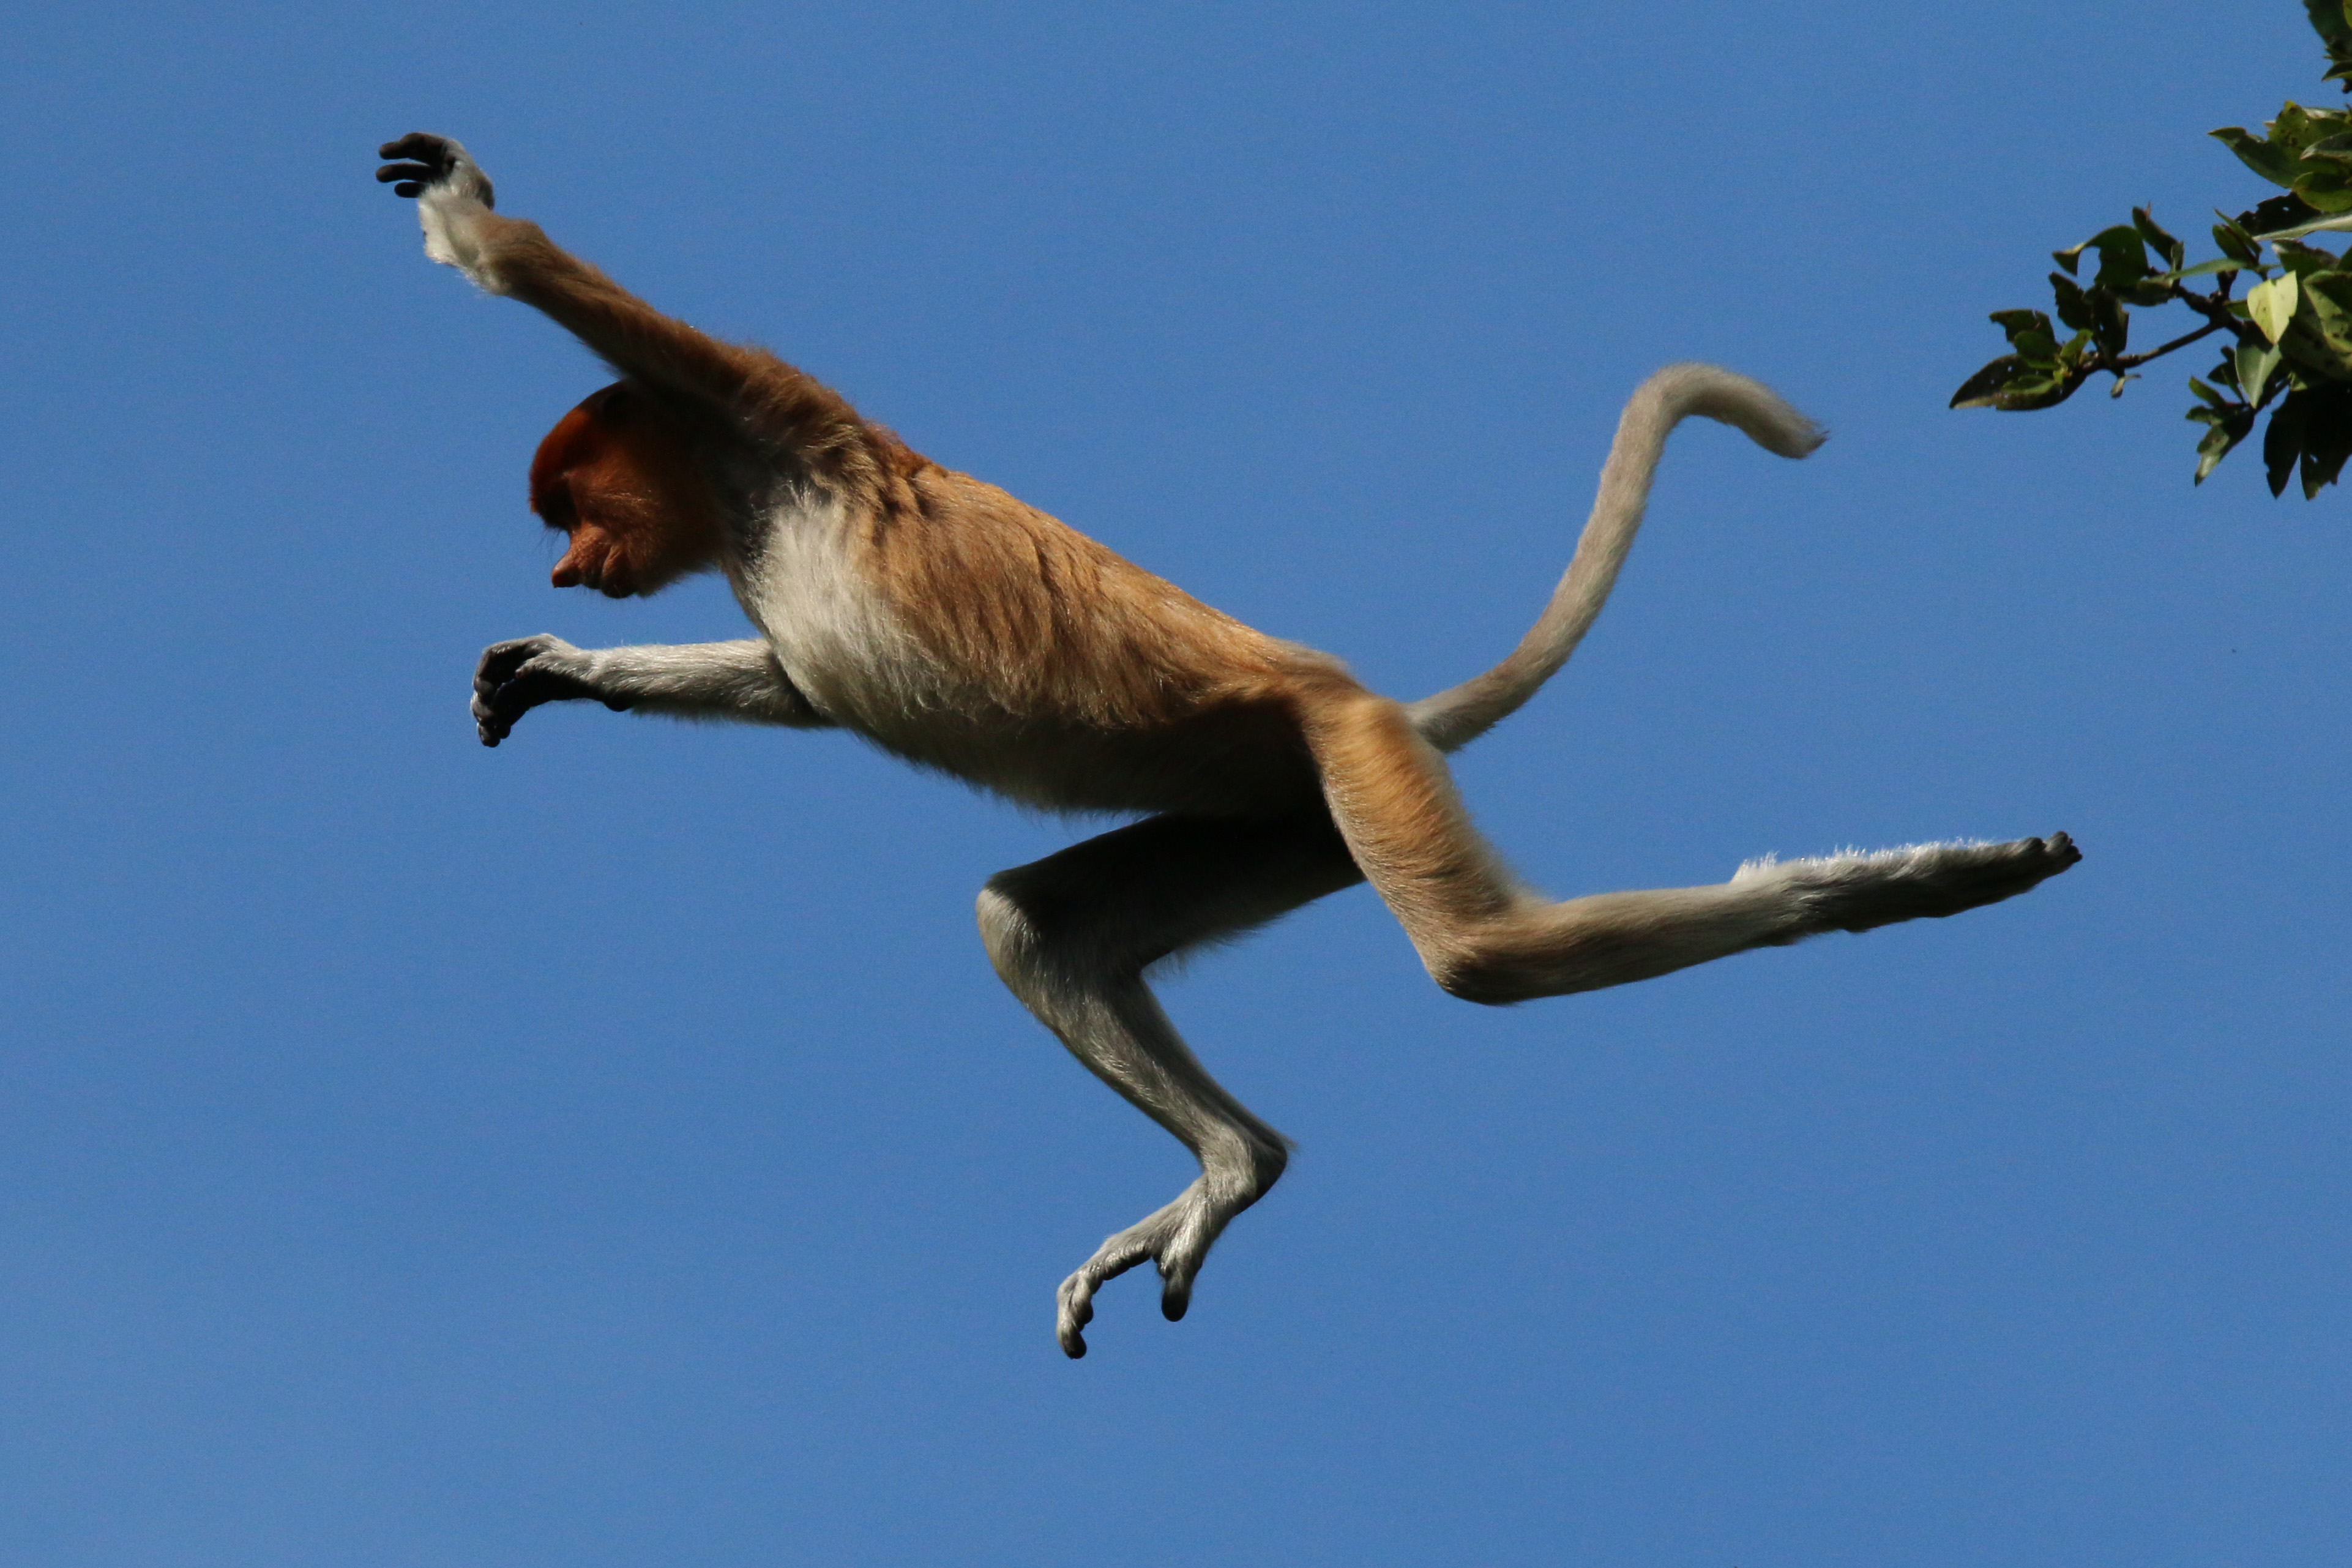 Proboscis monkey (Nasalis larvatus) jumping